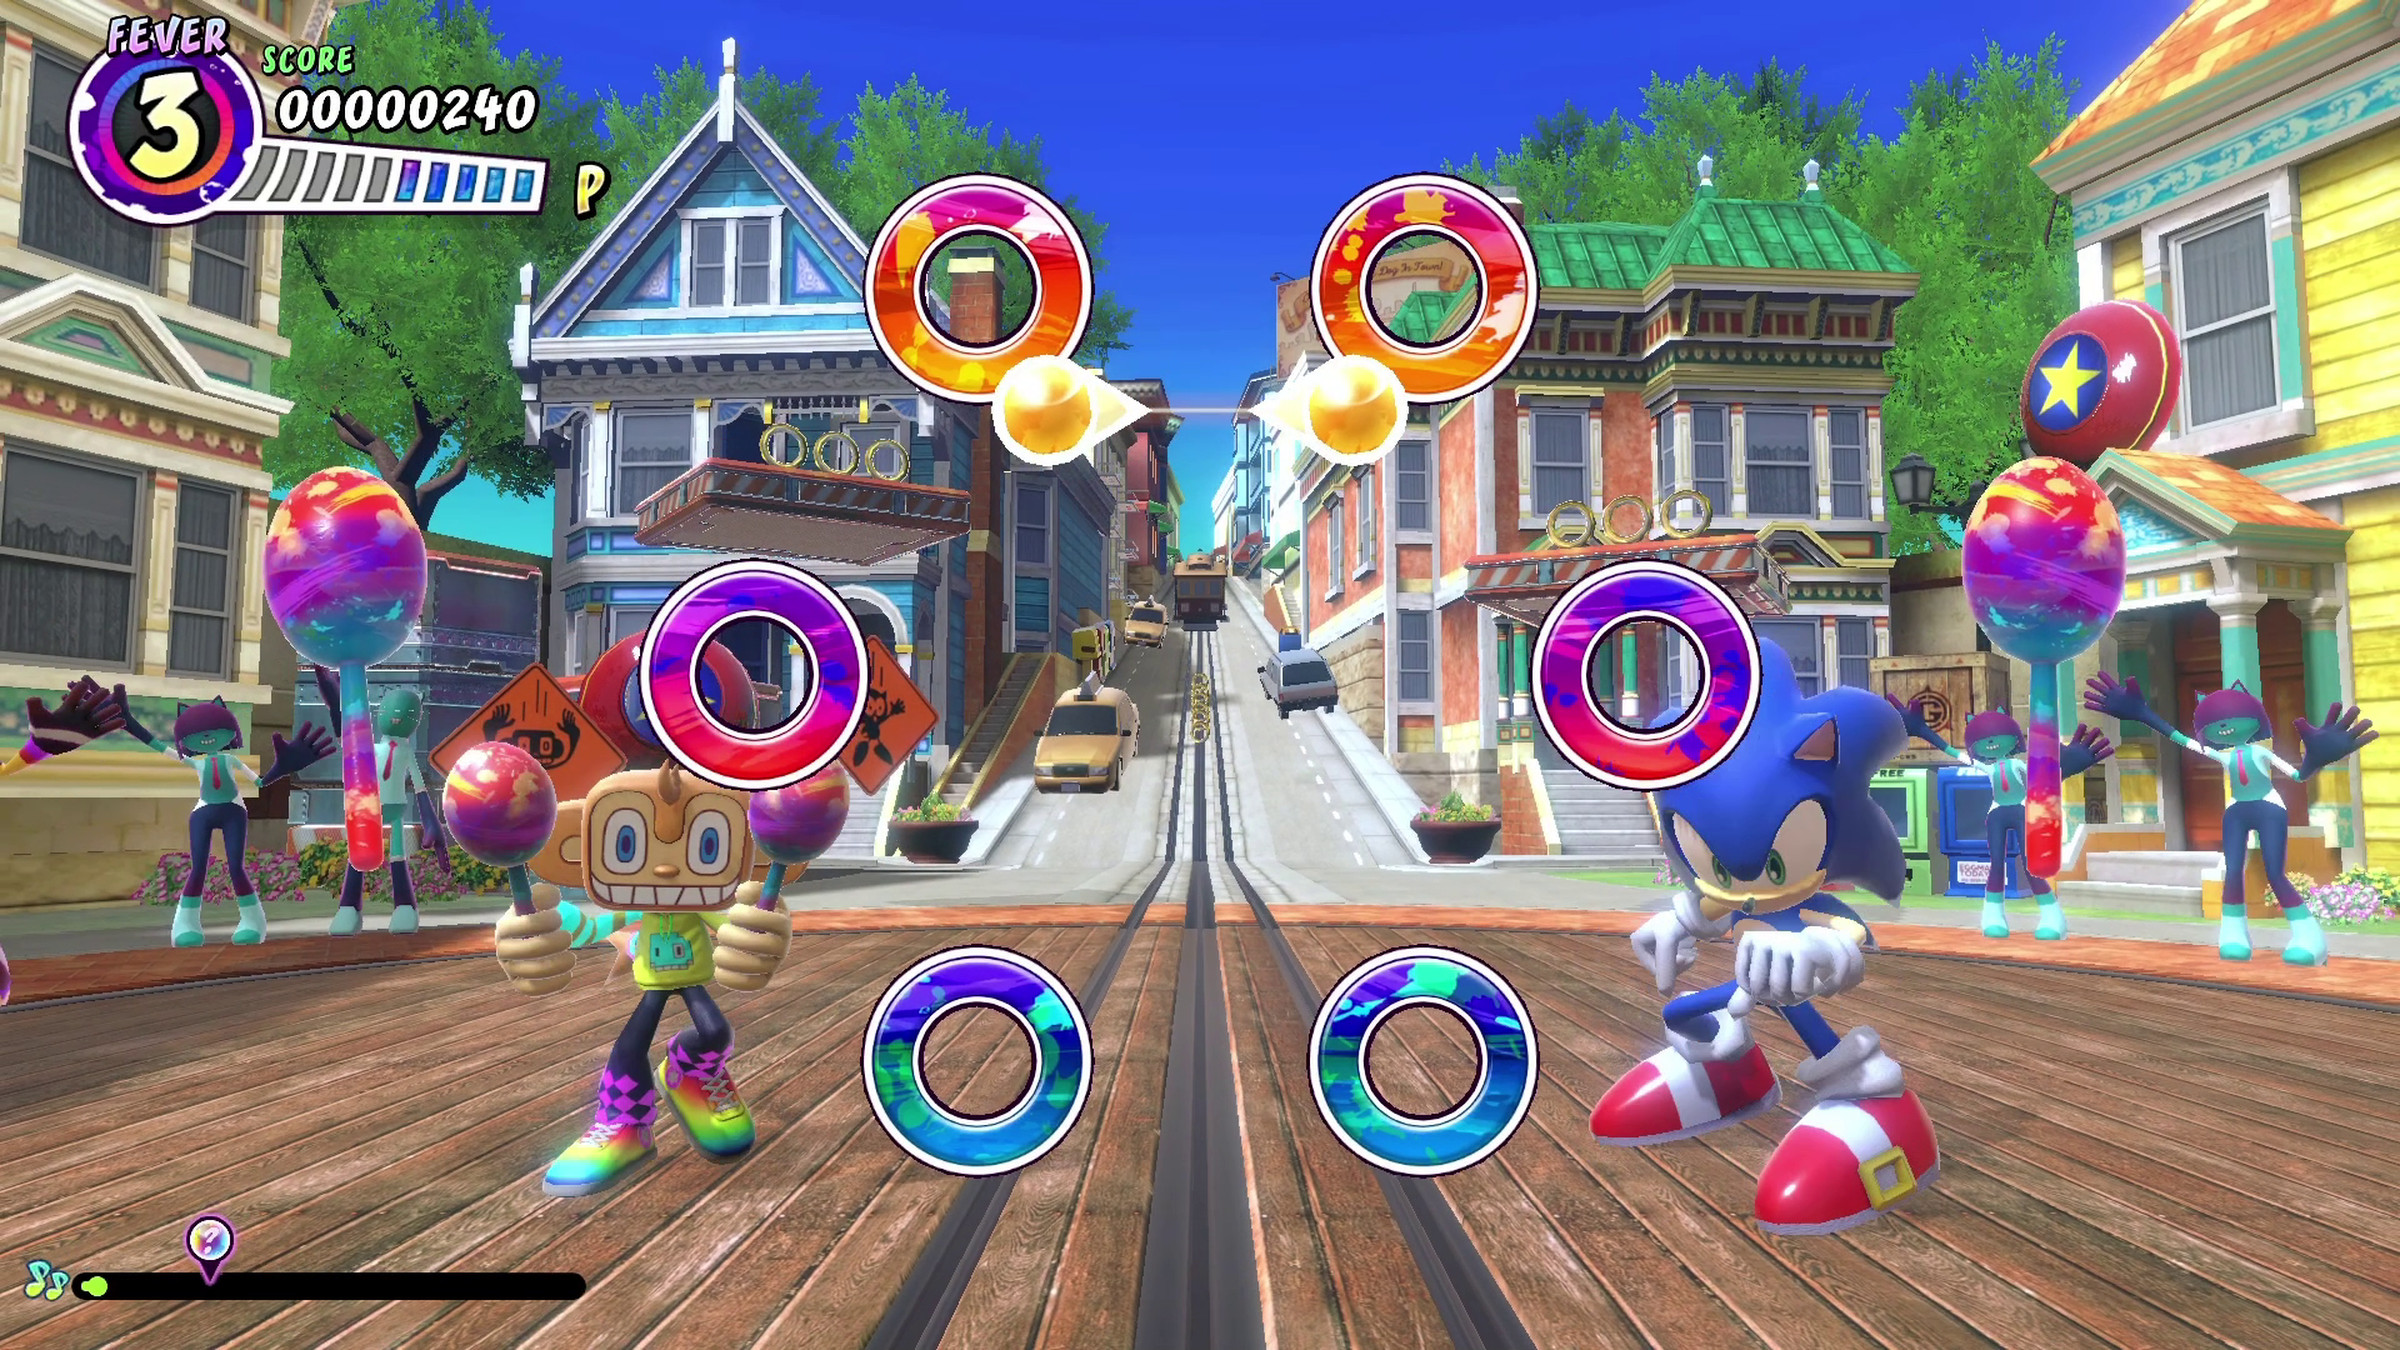 Có rất nhiều Sonic trong trò chơi này, bao gồm các bài hát, trang phục, maracas, hiệu ứng âm thanh và sân khấu nơi bạn nhảy cùng với người hùng màu xanh của Sega.